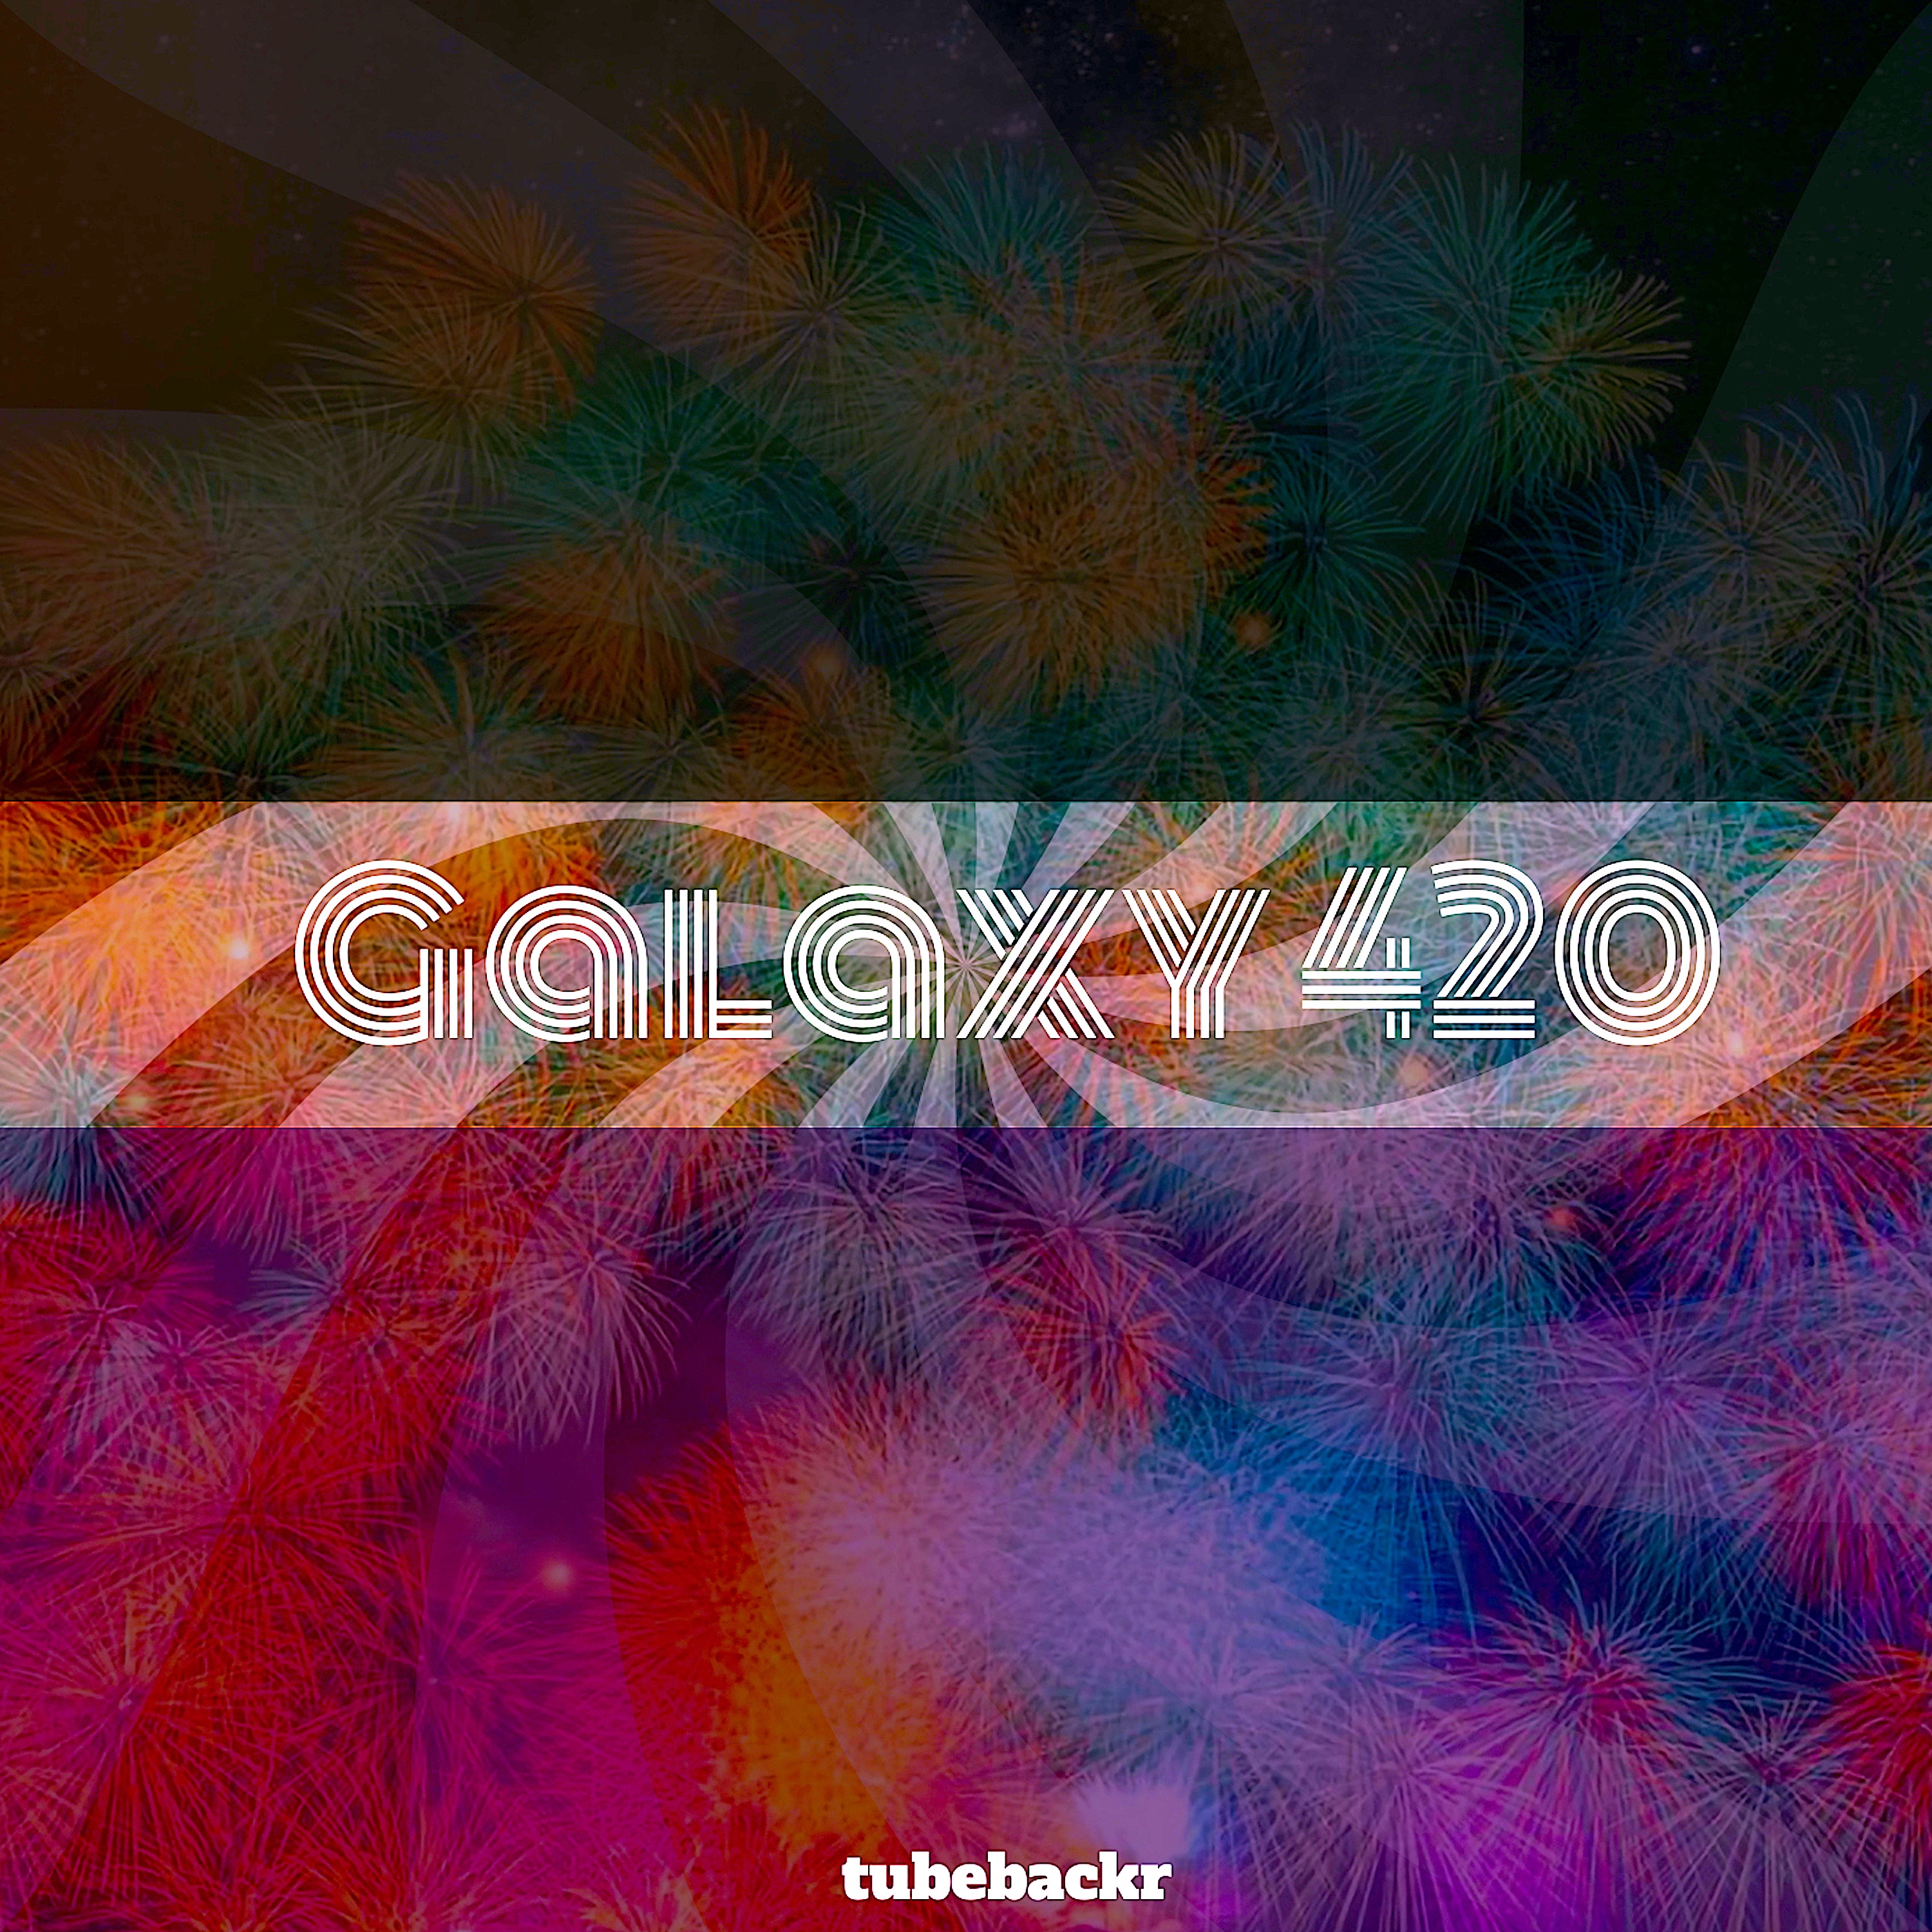 ডাউনলোড করুন Galaxy 420